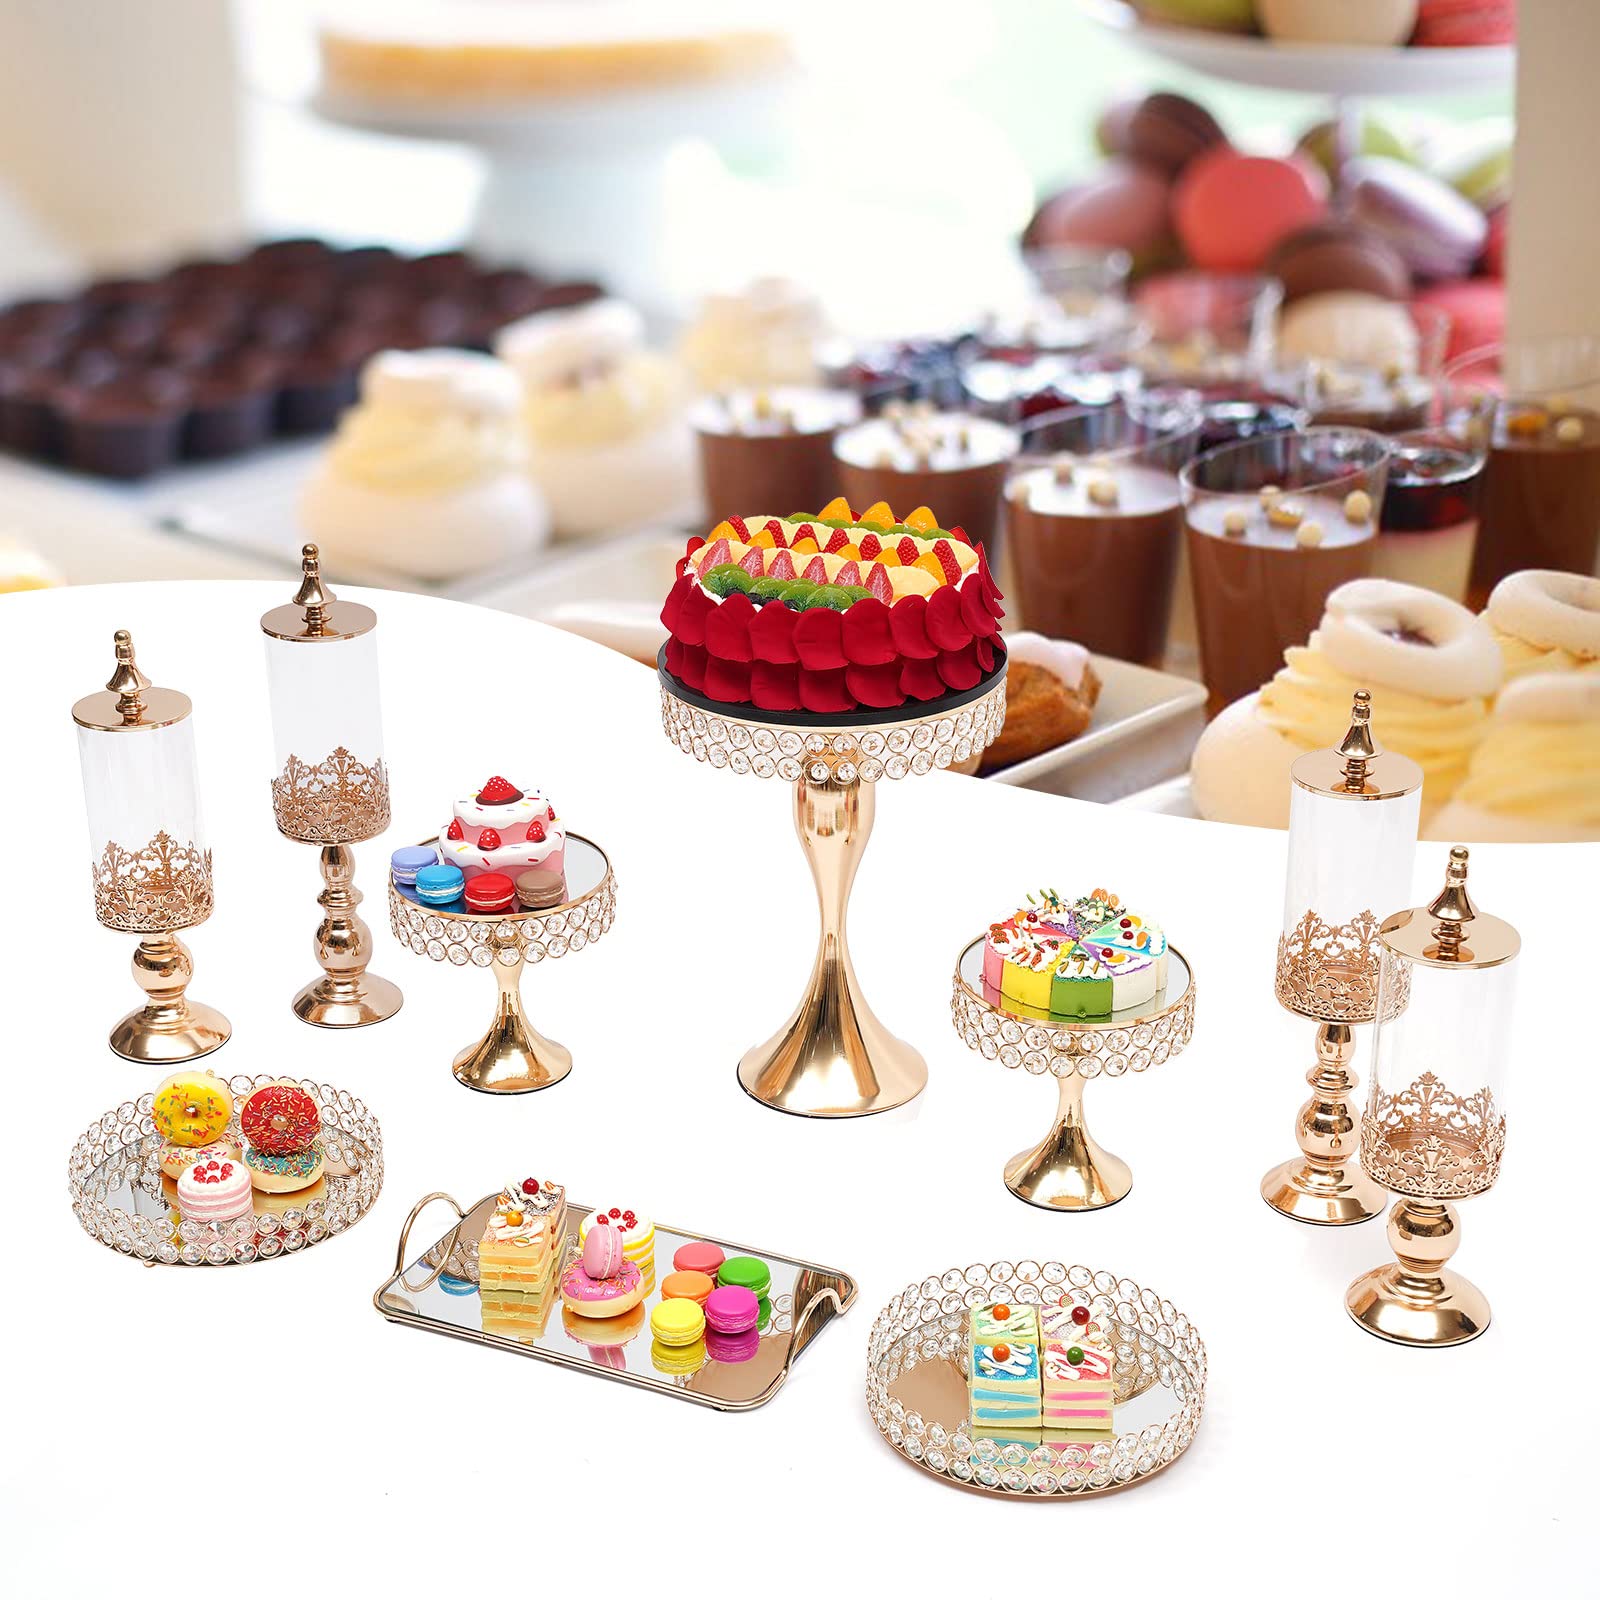 Présentoir à gâteau design esthétique, décoration parfaite pour la salle à manger ou la table.